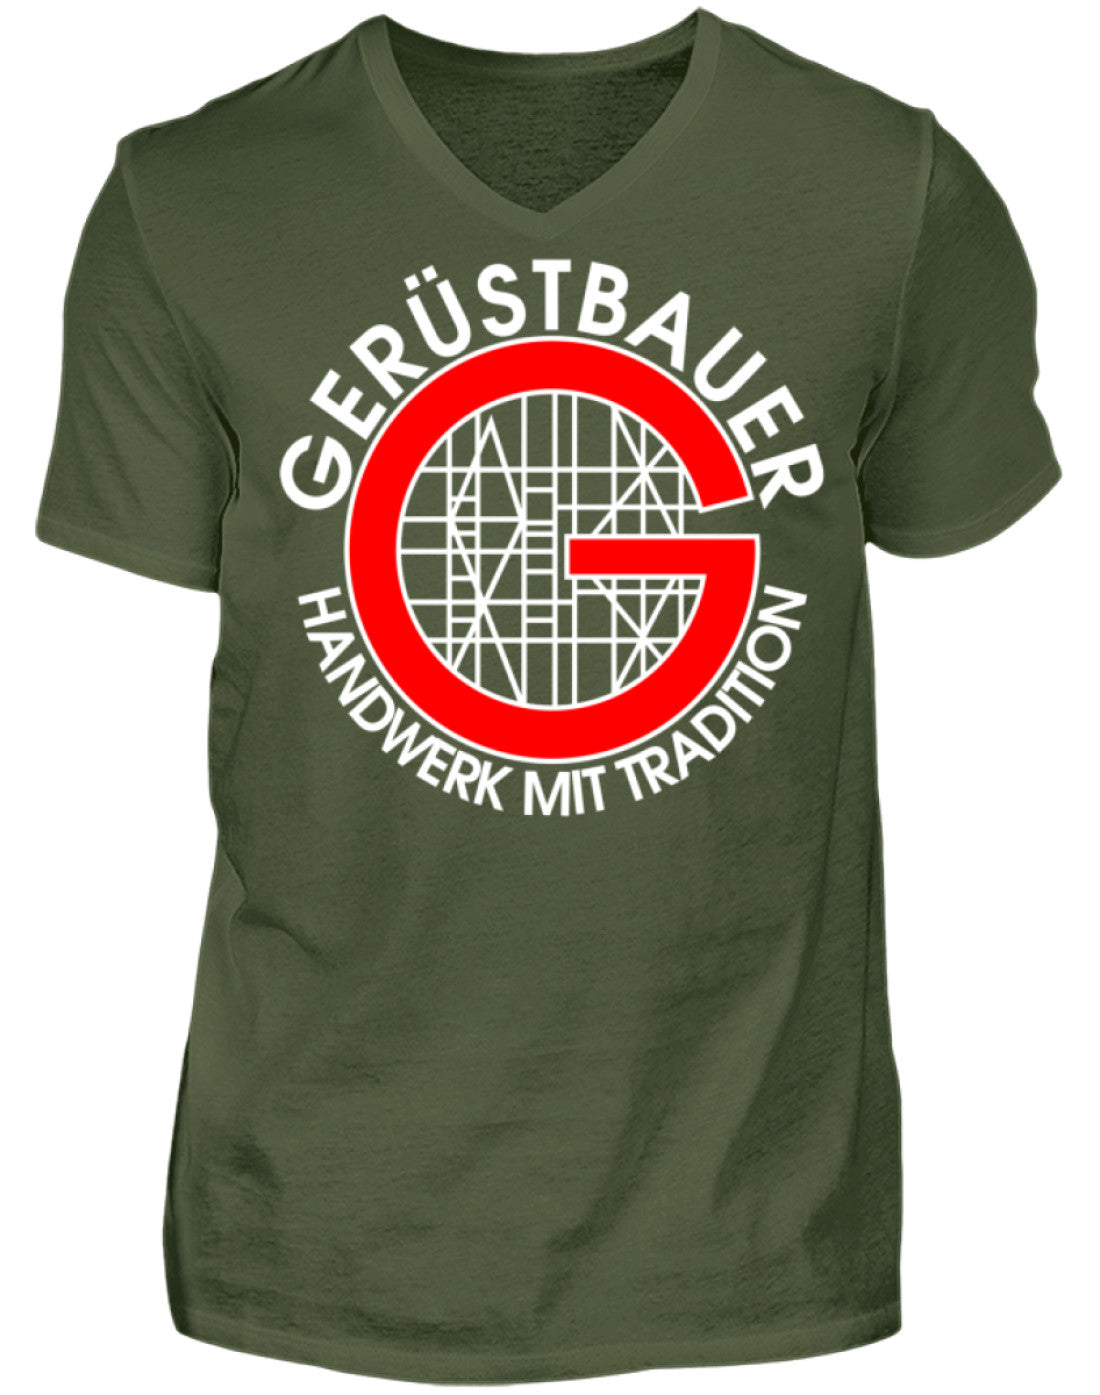 Gerüstbauer / Handwerk mit Tradition  - Herren V-Neck Shirt €21.95 Gerüstbauer - Shop >>